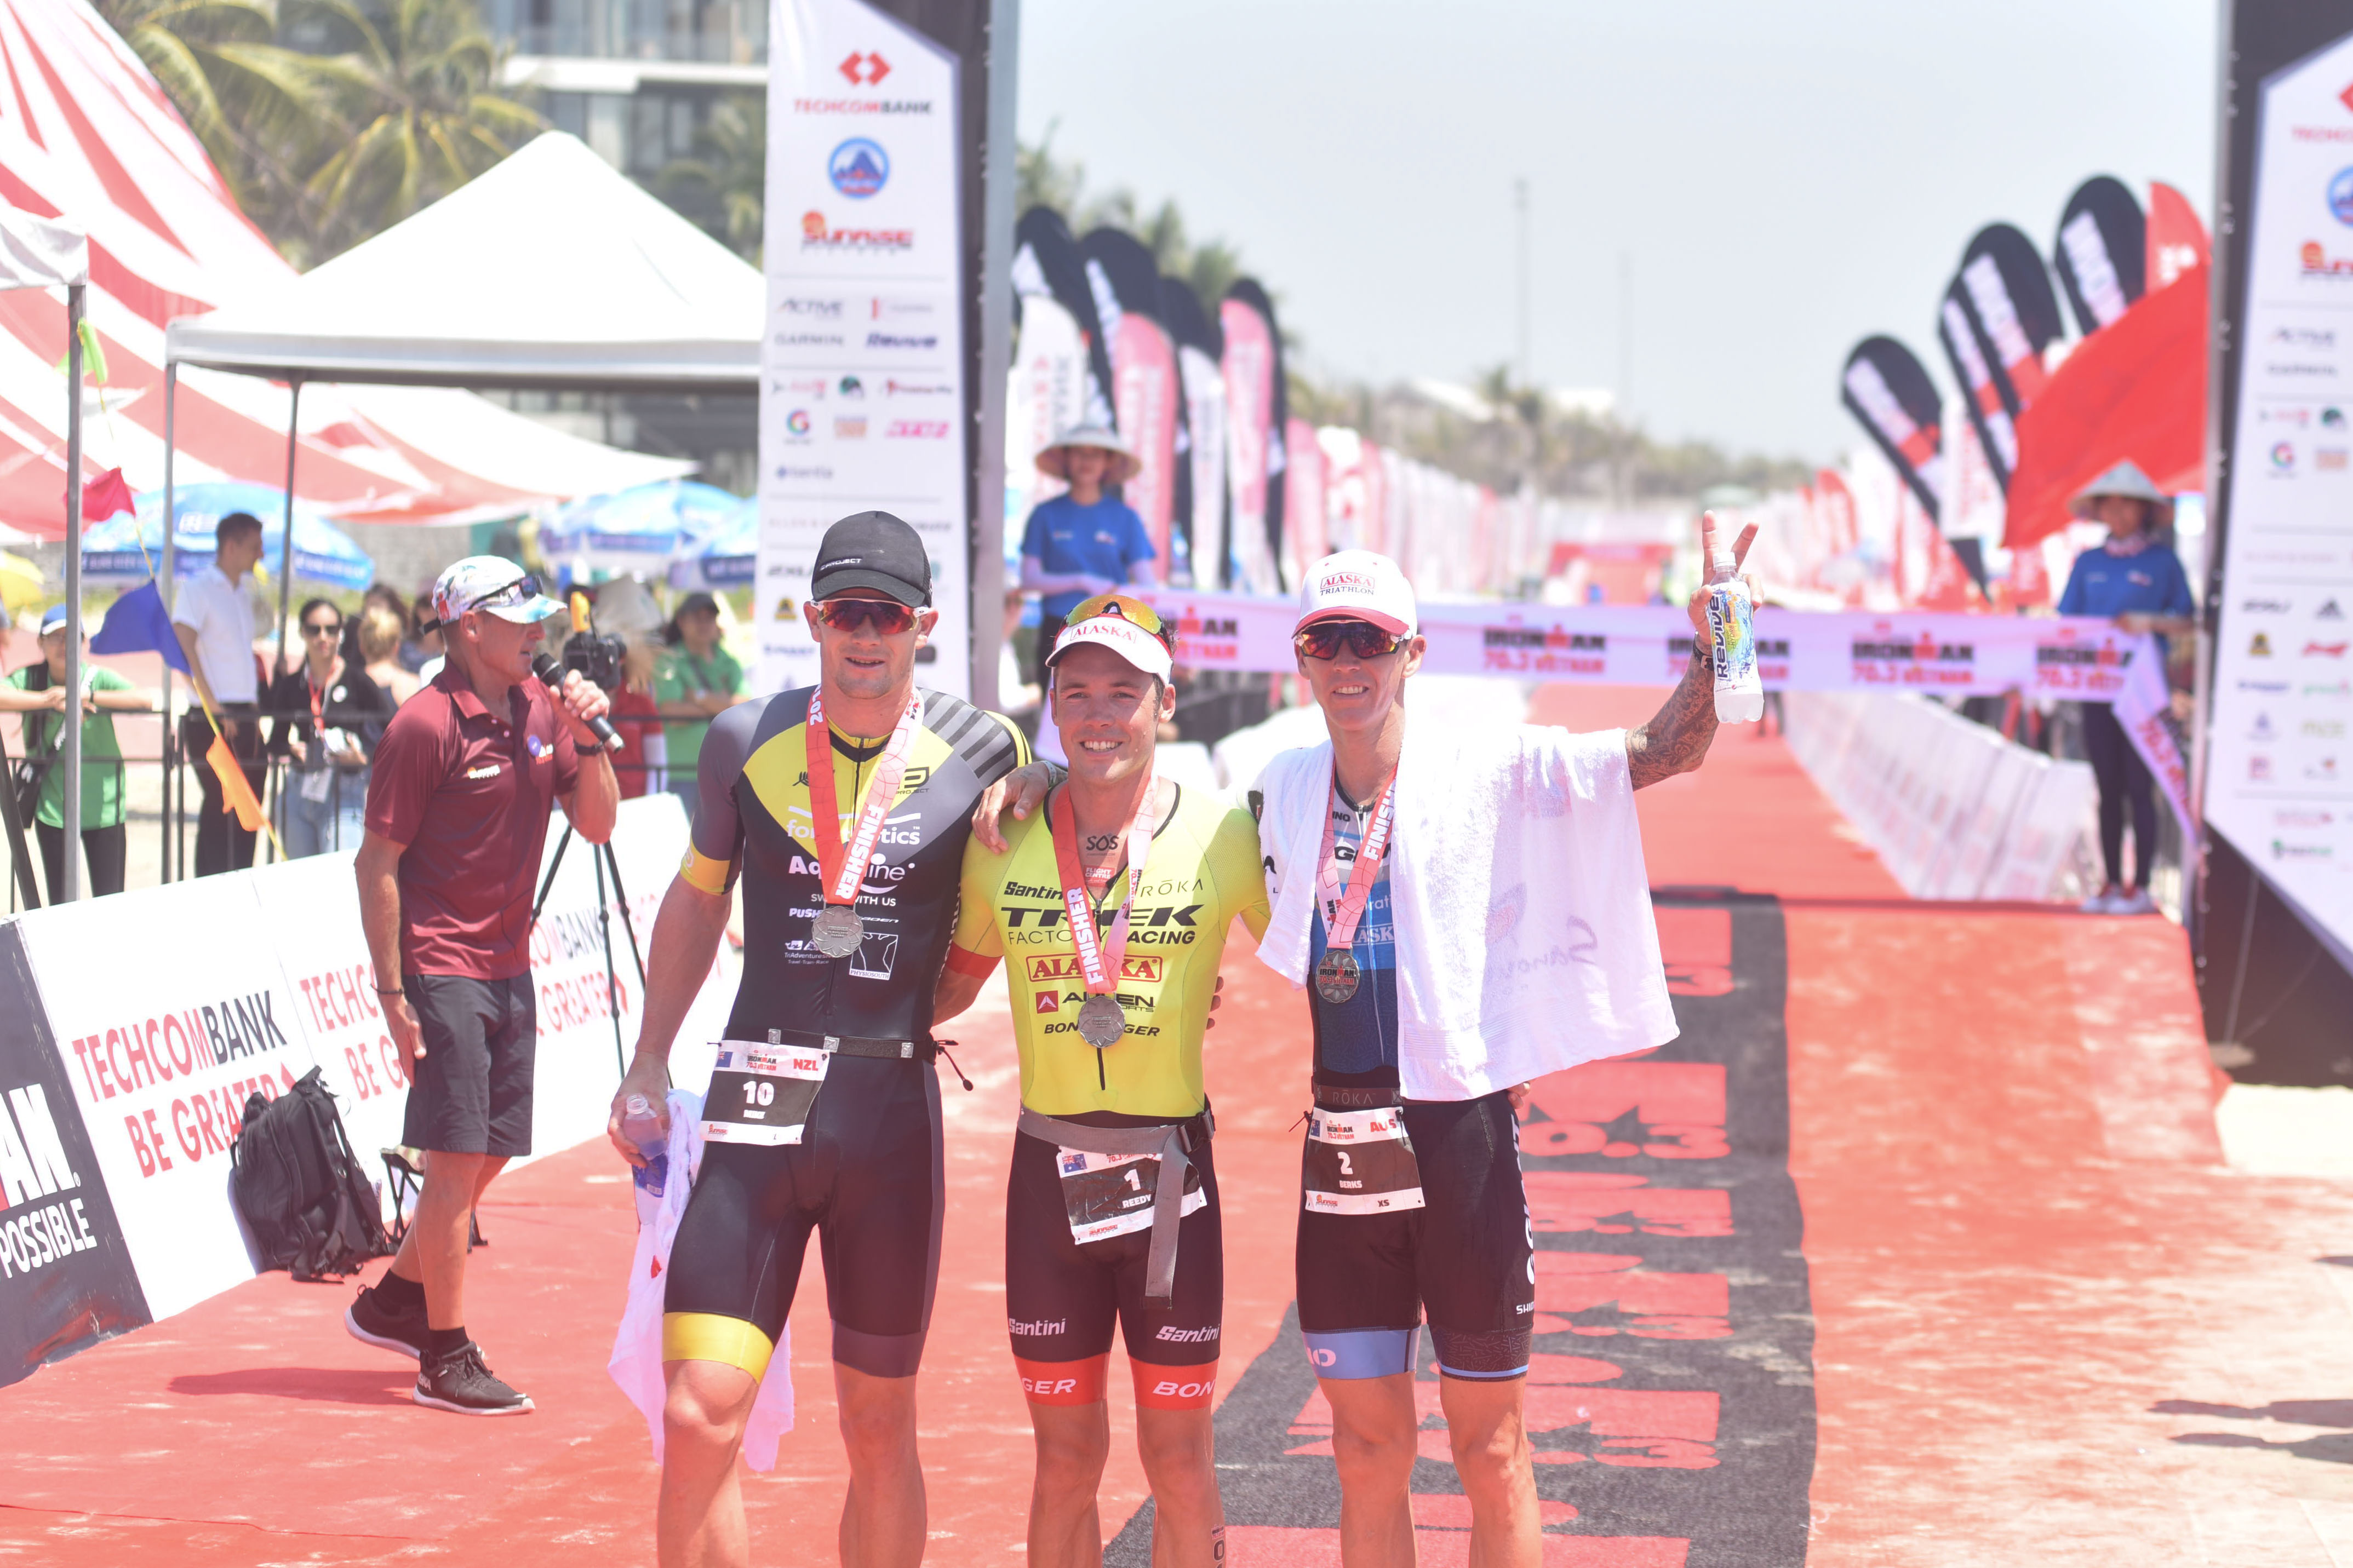 Patrick Lange và Holly Lawrence giành chiến thắng thuyết phục giữa các vận động viên chuyên nghiệp tại Ironman 70.3 vô địch Châu Á - Thái Bình Dương 